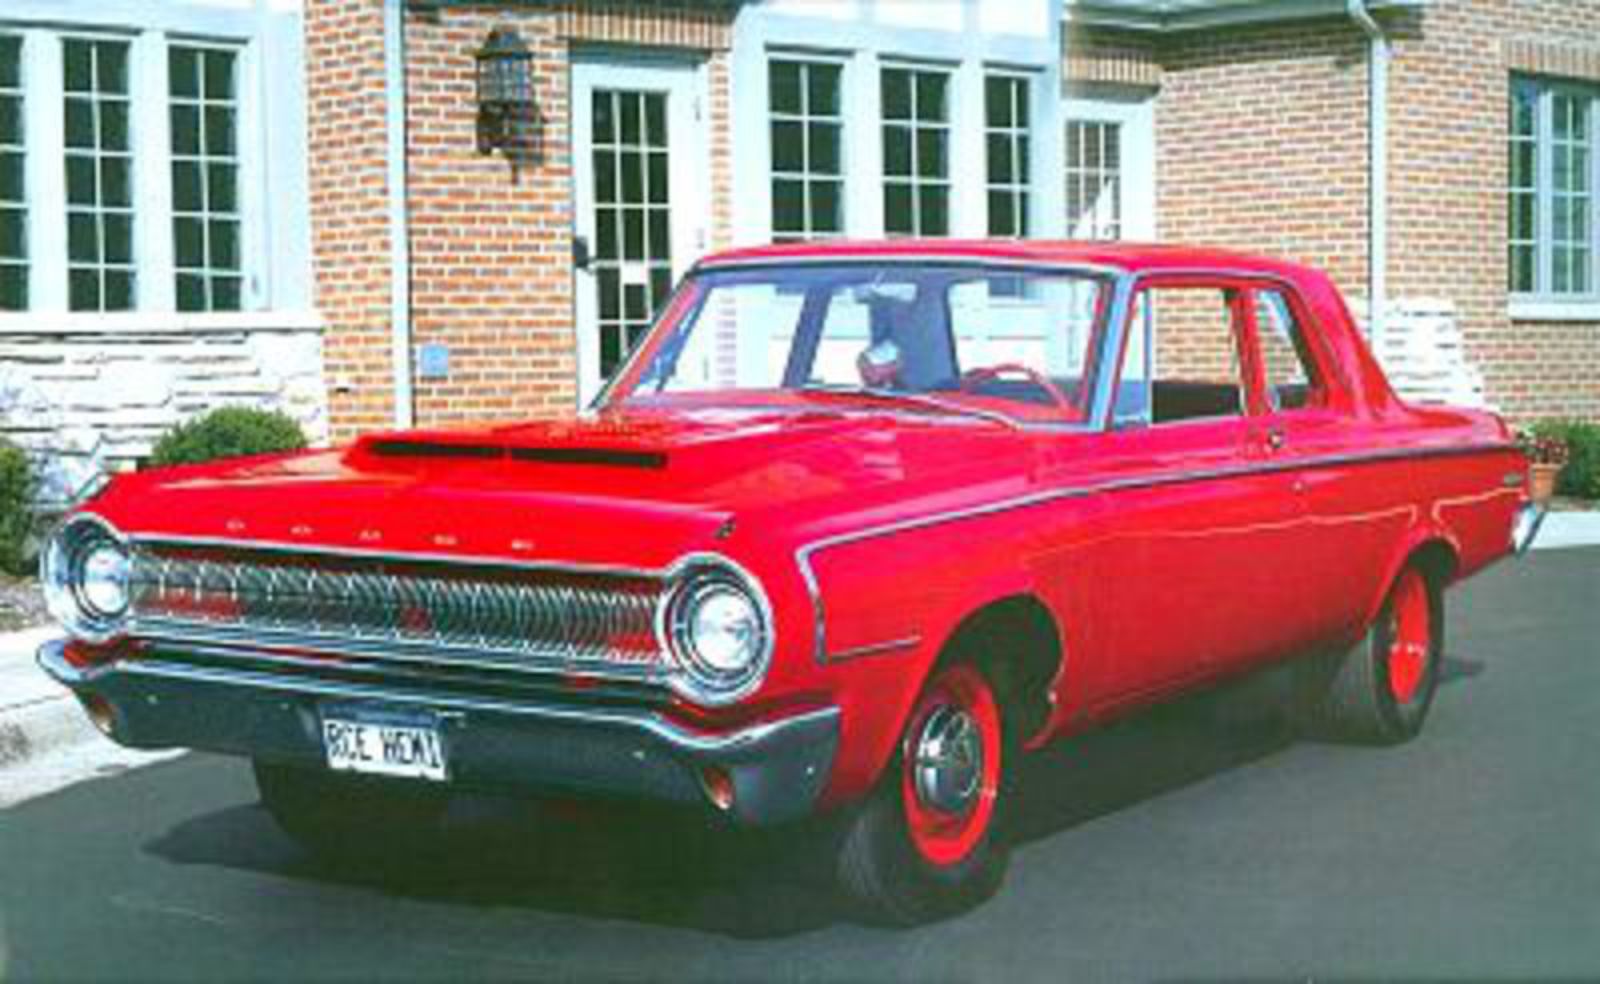 1964 Dodge 330 Super Stock Two-Door Sedan